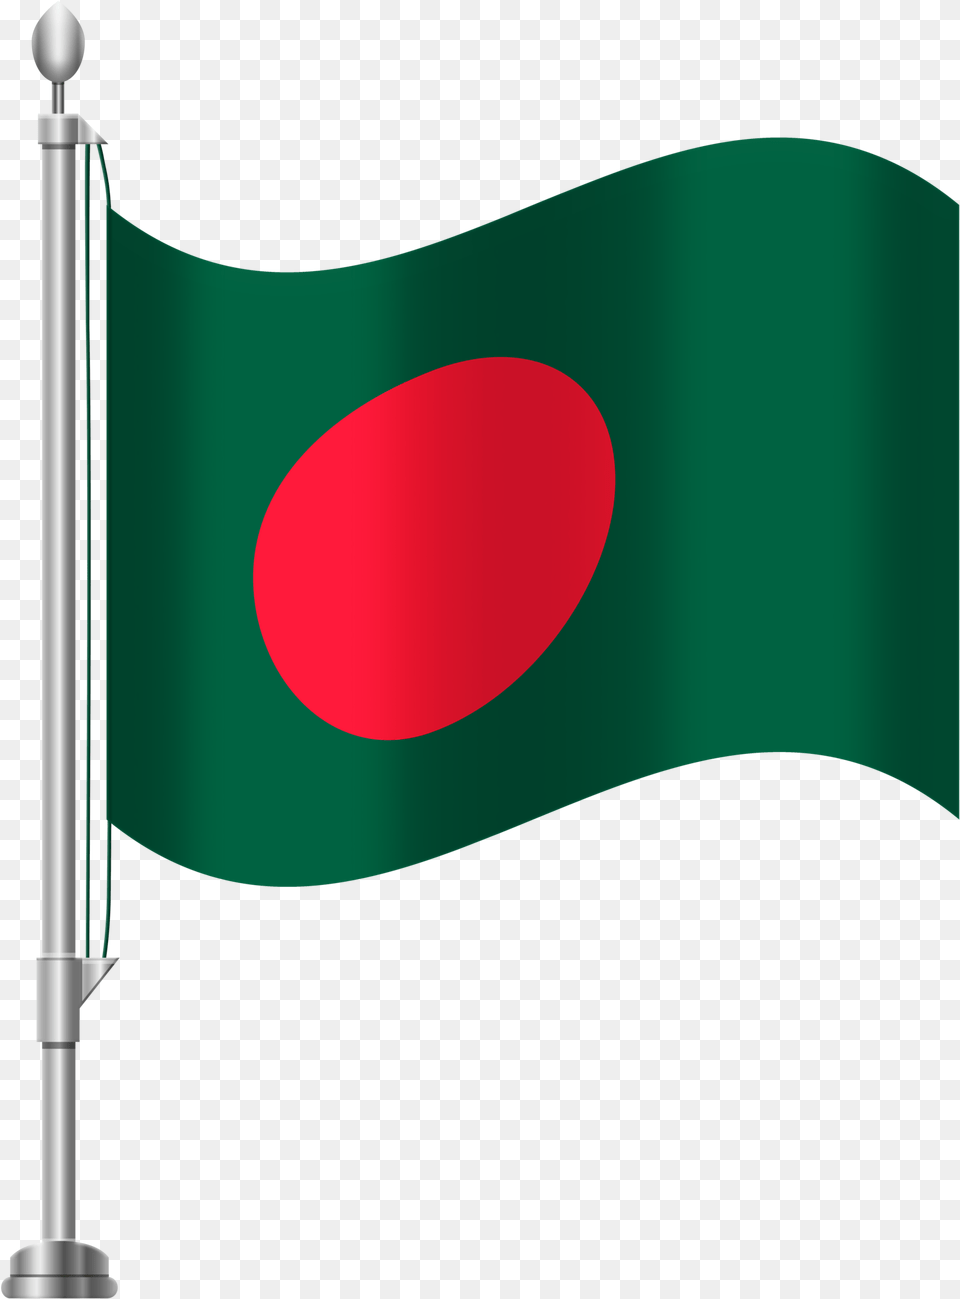 Bangladesh Flag, Bangladesh Flag Free Transparent Png